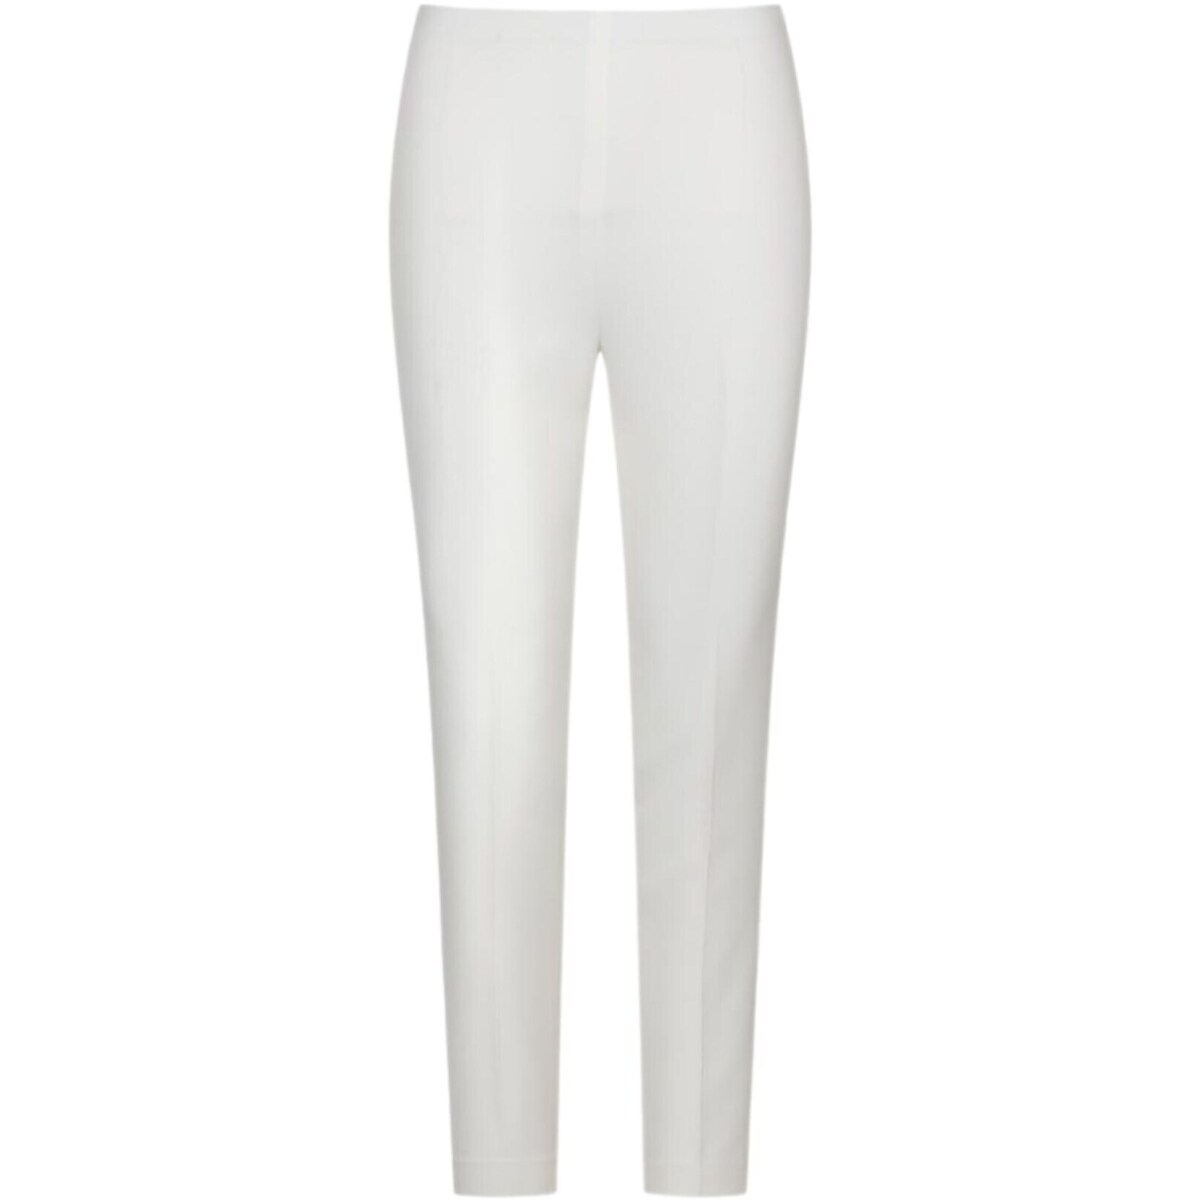 textil Mujer Pantalones con 5 bolsillos Sandro Ferrone S118XBDSF139 Blanco